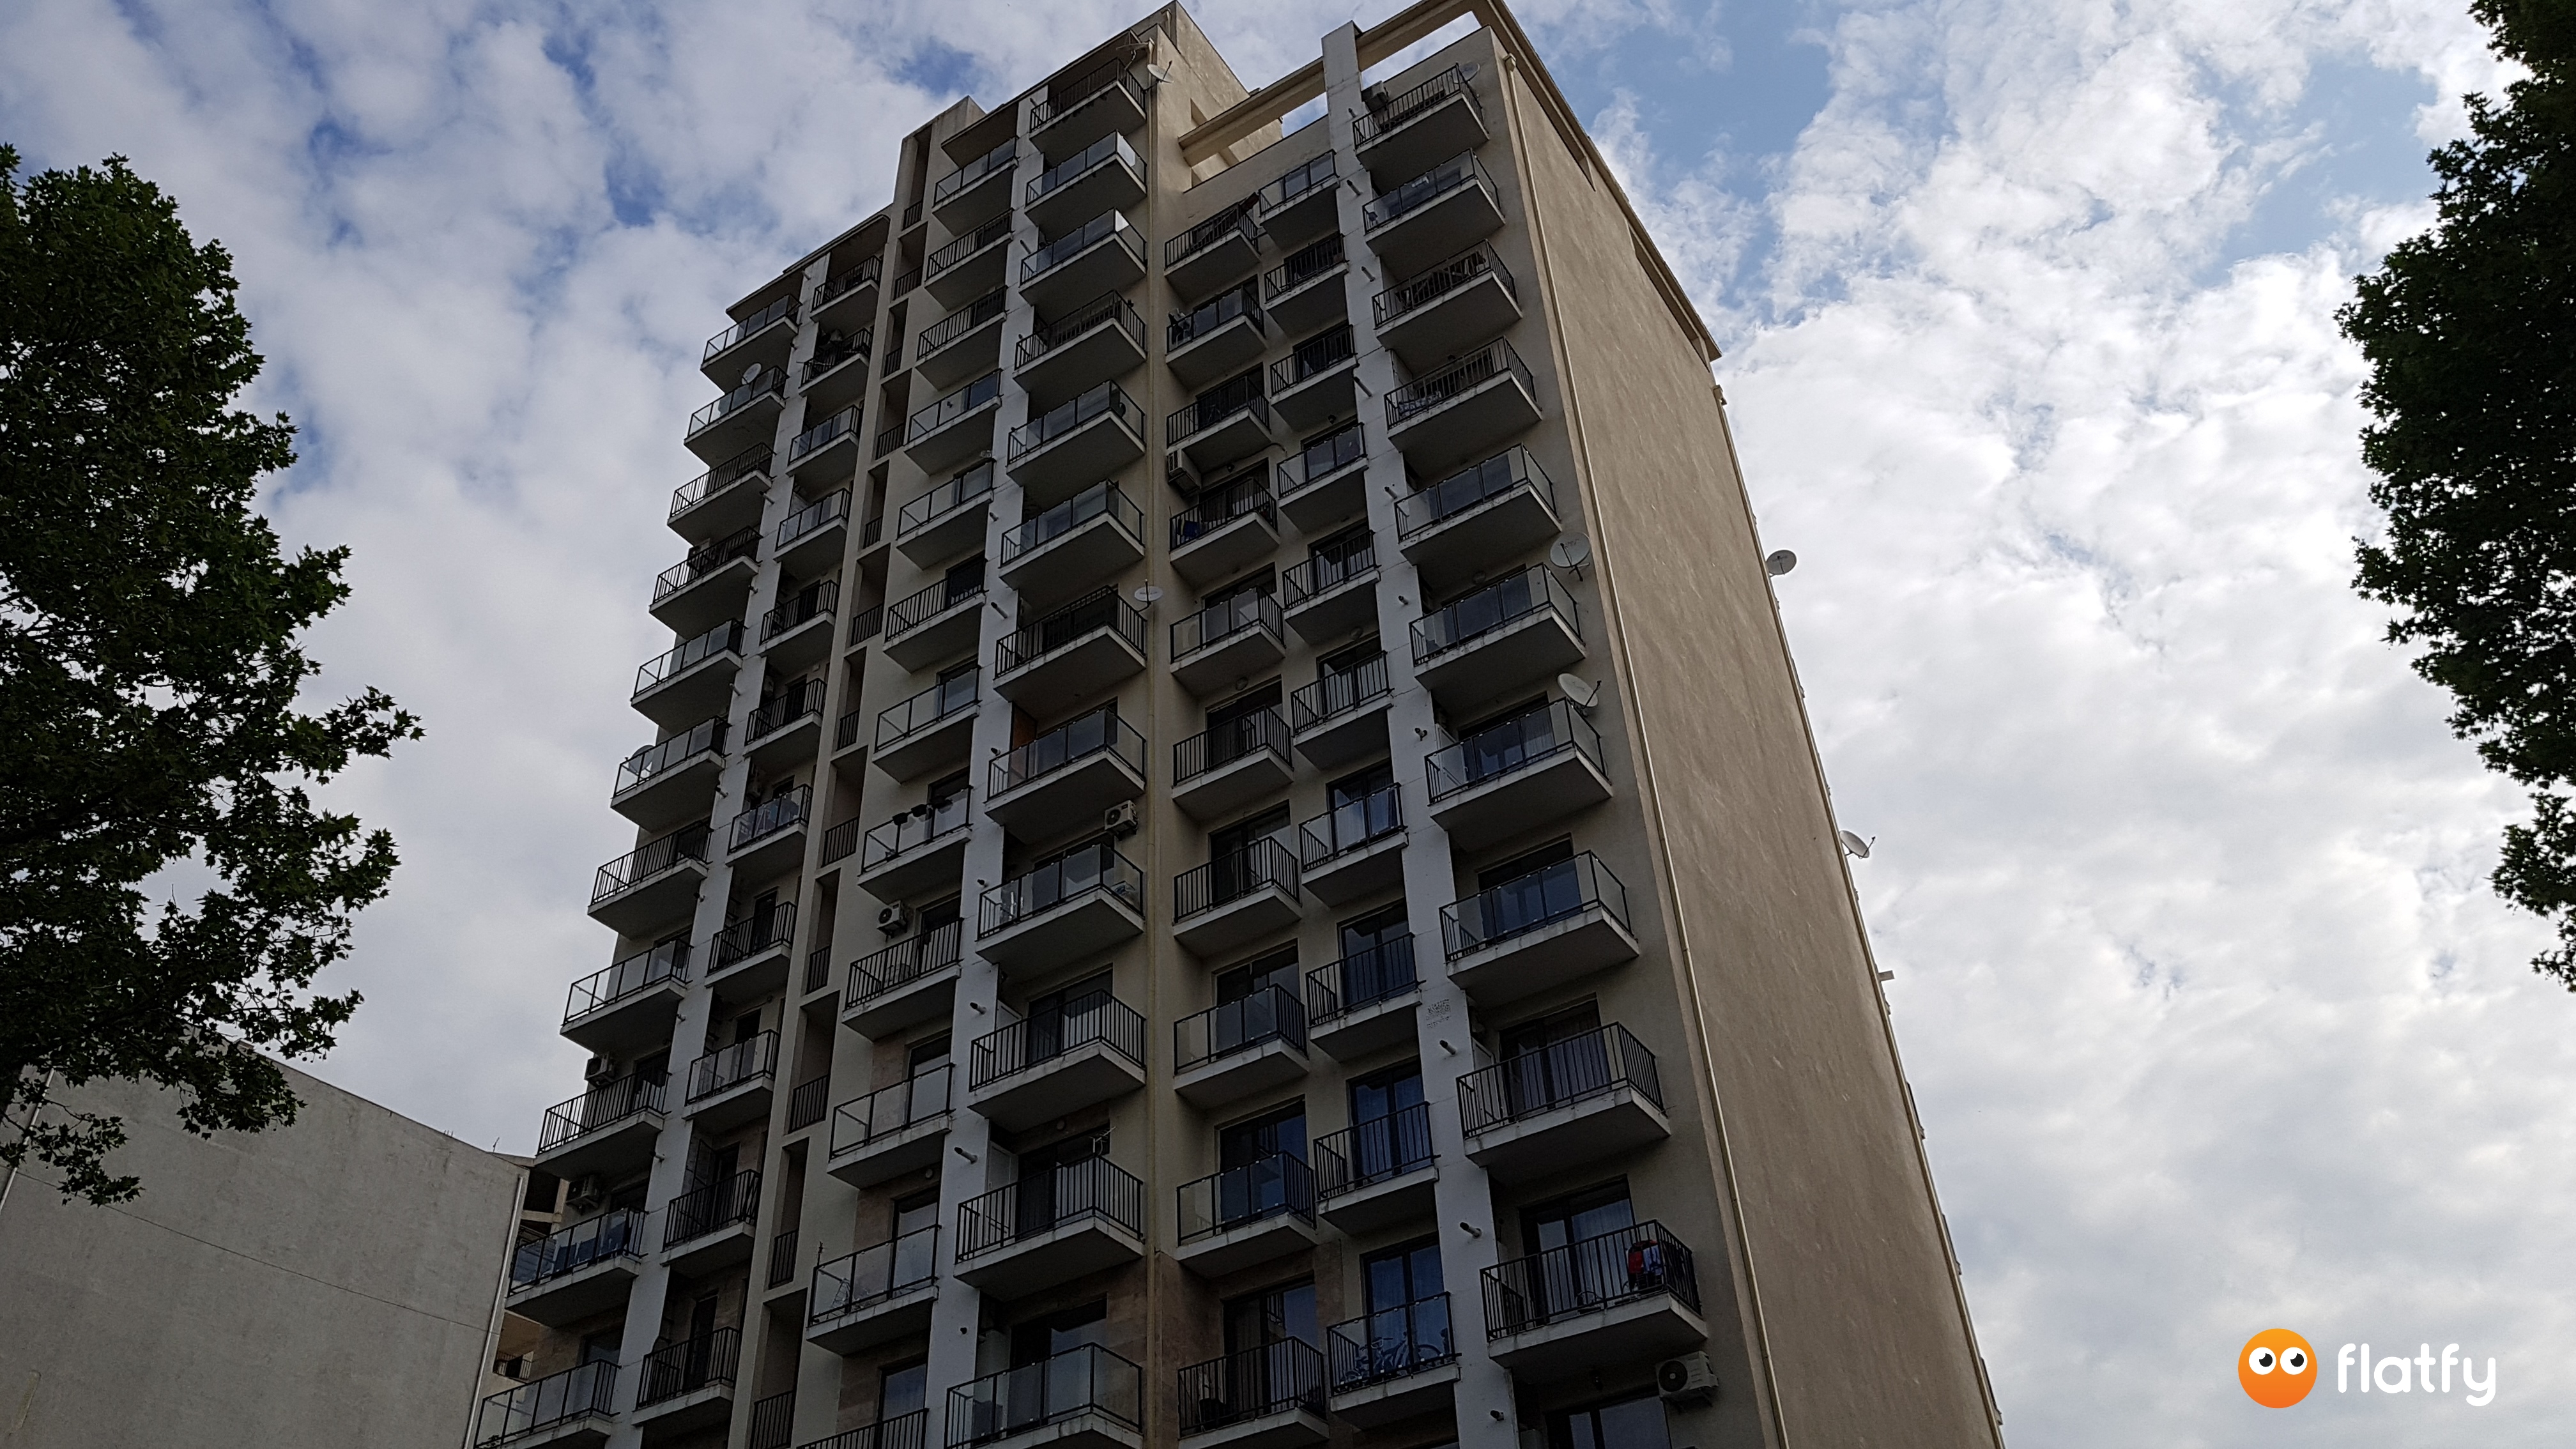 Construction progress House on Shartava 39 - Angle 1, May 2019